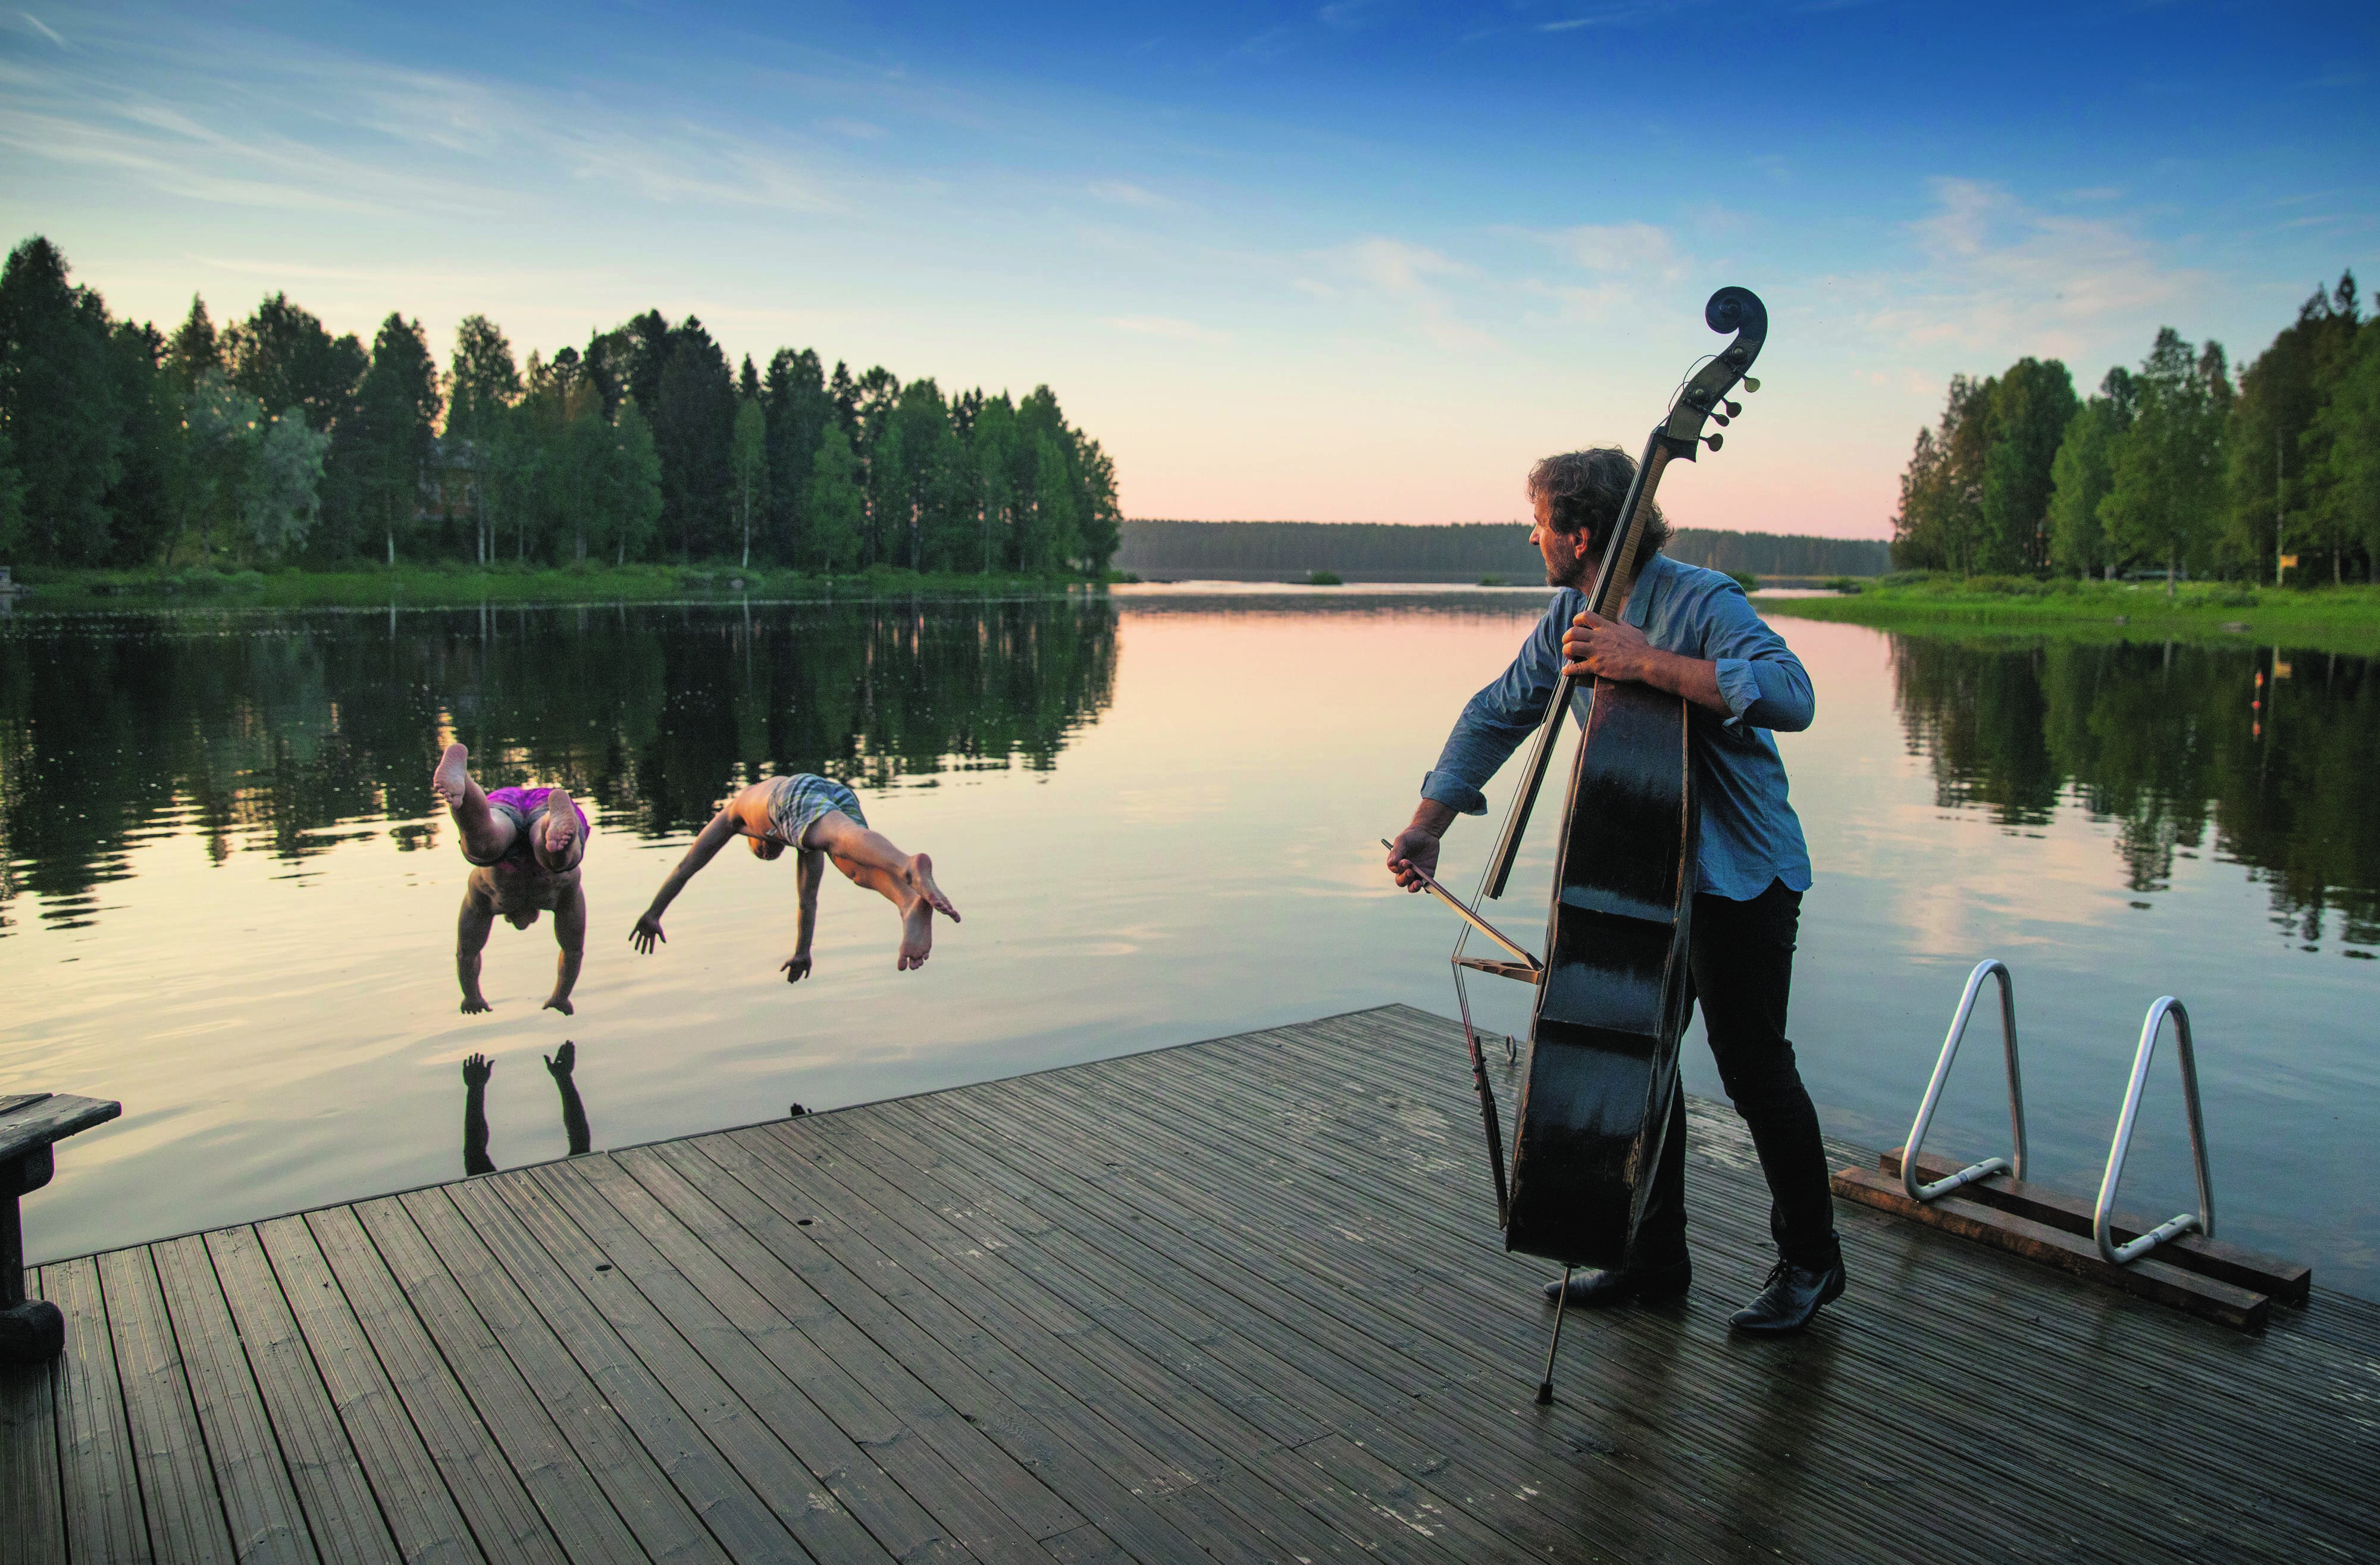 en man spelar på en cello på en pir när människor hoppar i ett vatten i det finska sjödistriktet